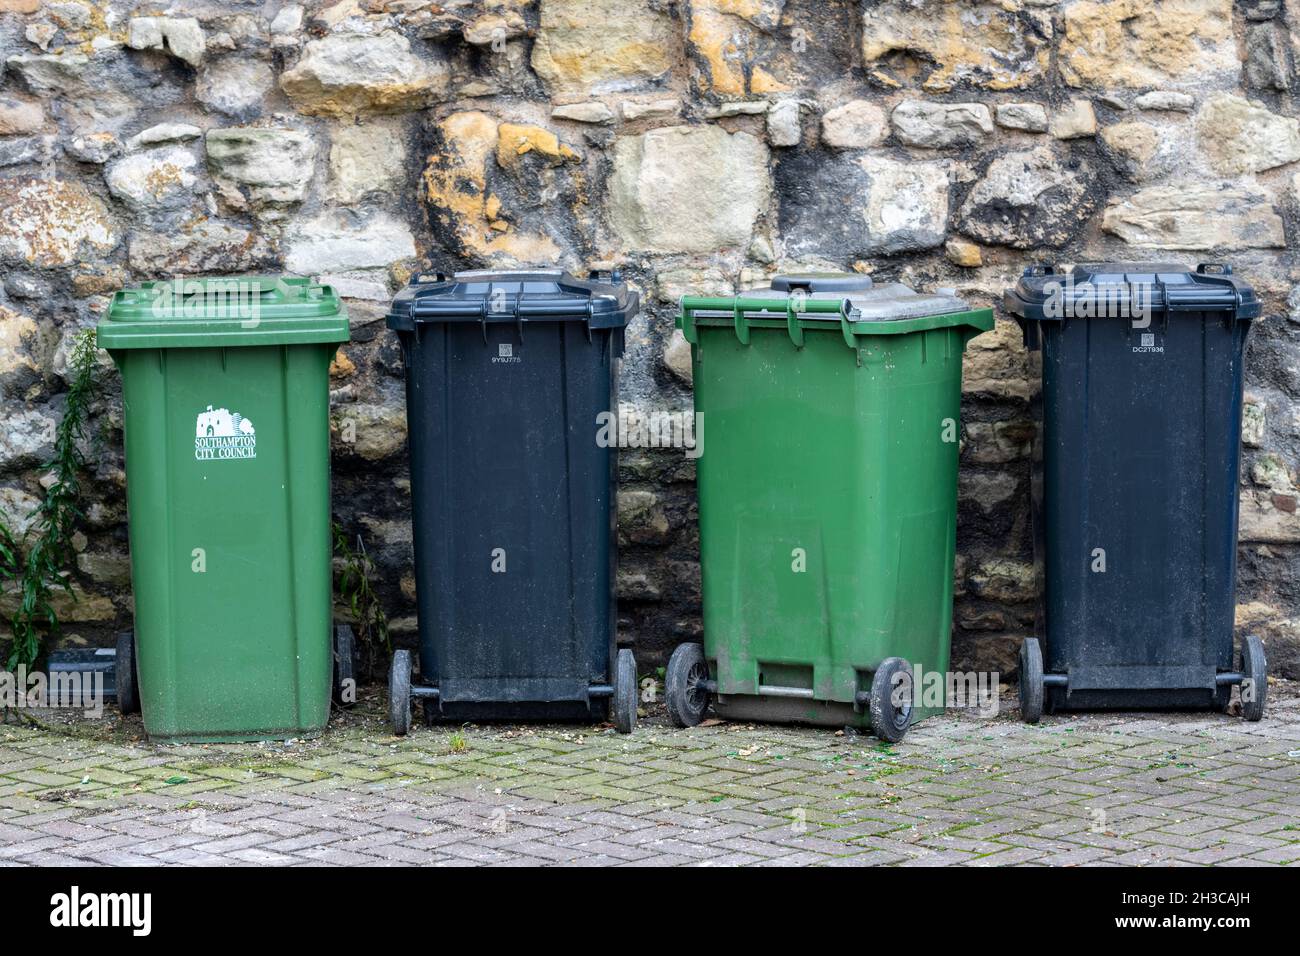 Mülltonnen in einer Reihe, Reihe von Mülltonnen, Mülltonnen, Abfallrecycling-Behälter, Mülltonnen bereit zur Sammlung. Schwarze und grüne Kunststoffabfallbehälter Stockfoto